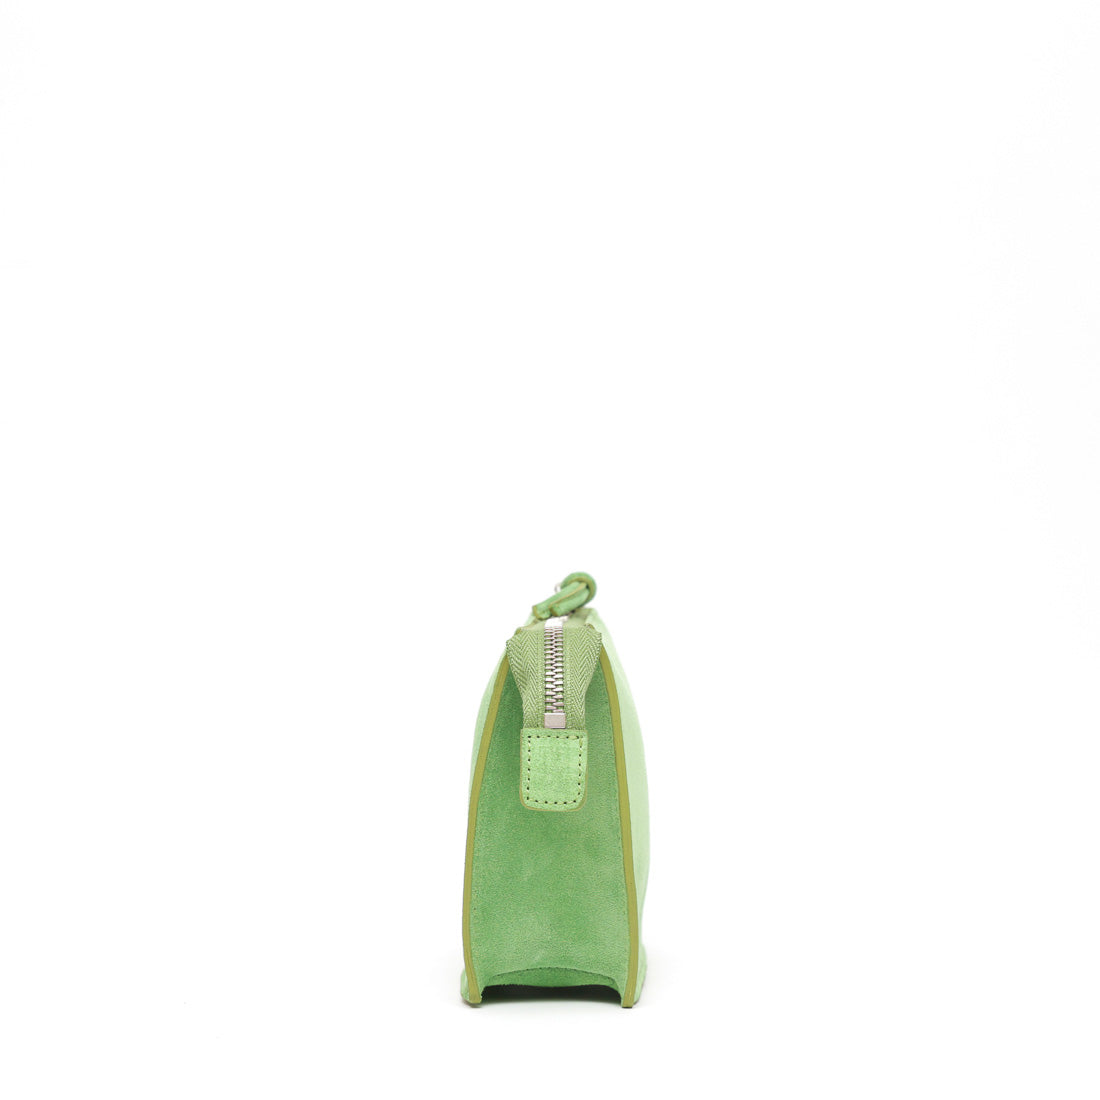 pocket piccola in pelle scamosciata verde prodotta da Pianigianibags